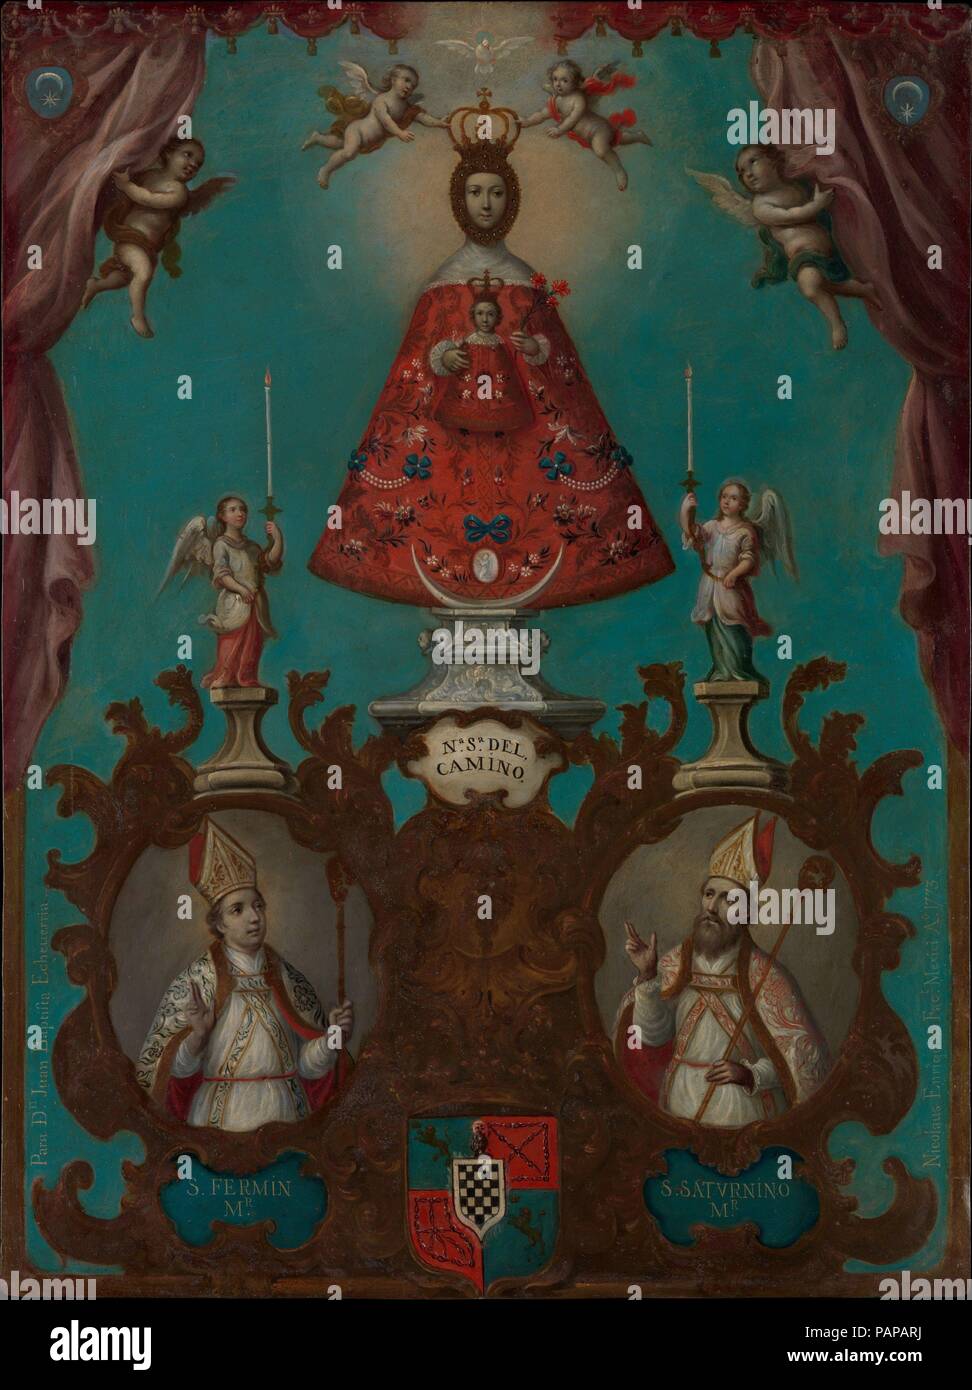 La Vergine di El Camino con San Fermín e San Saturnino. Artista: Nicolás Enríquez (Messicano, 1704-1790). Dimensioni: 22 1/4 × 16 1/2 in. (56,5 × 41,9 cm) incorniciato: 25 3/8 × 19 3/4 x 1 3/8 in. (64,5 × 50,2 × 3,5 cm). Data: 1773. Secondo la leggenda, la scultura conosciuta come "Nostra Signora di El Camino' apparsa miracolosamente in travetti di Pamplona chiesa nel 1487. La devozione verso l'immagine prevale in Pamplona e il resto della Navarra, compreso il proprietario nativo di valle di Baztán, la cui scacchiera stemma viene visualizzato sotto la Vergine. Le figure di San Saturnino e San Fermín, patroni di Pamplona un Foto Stock